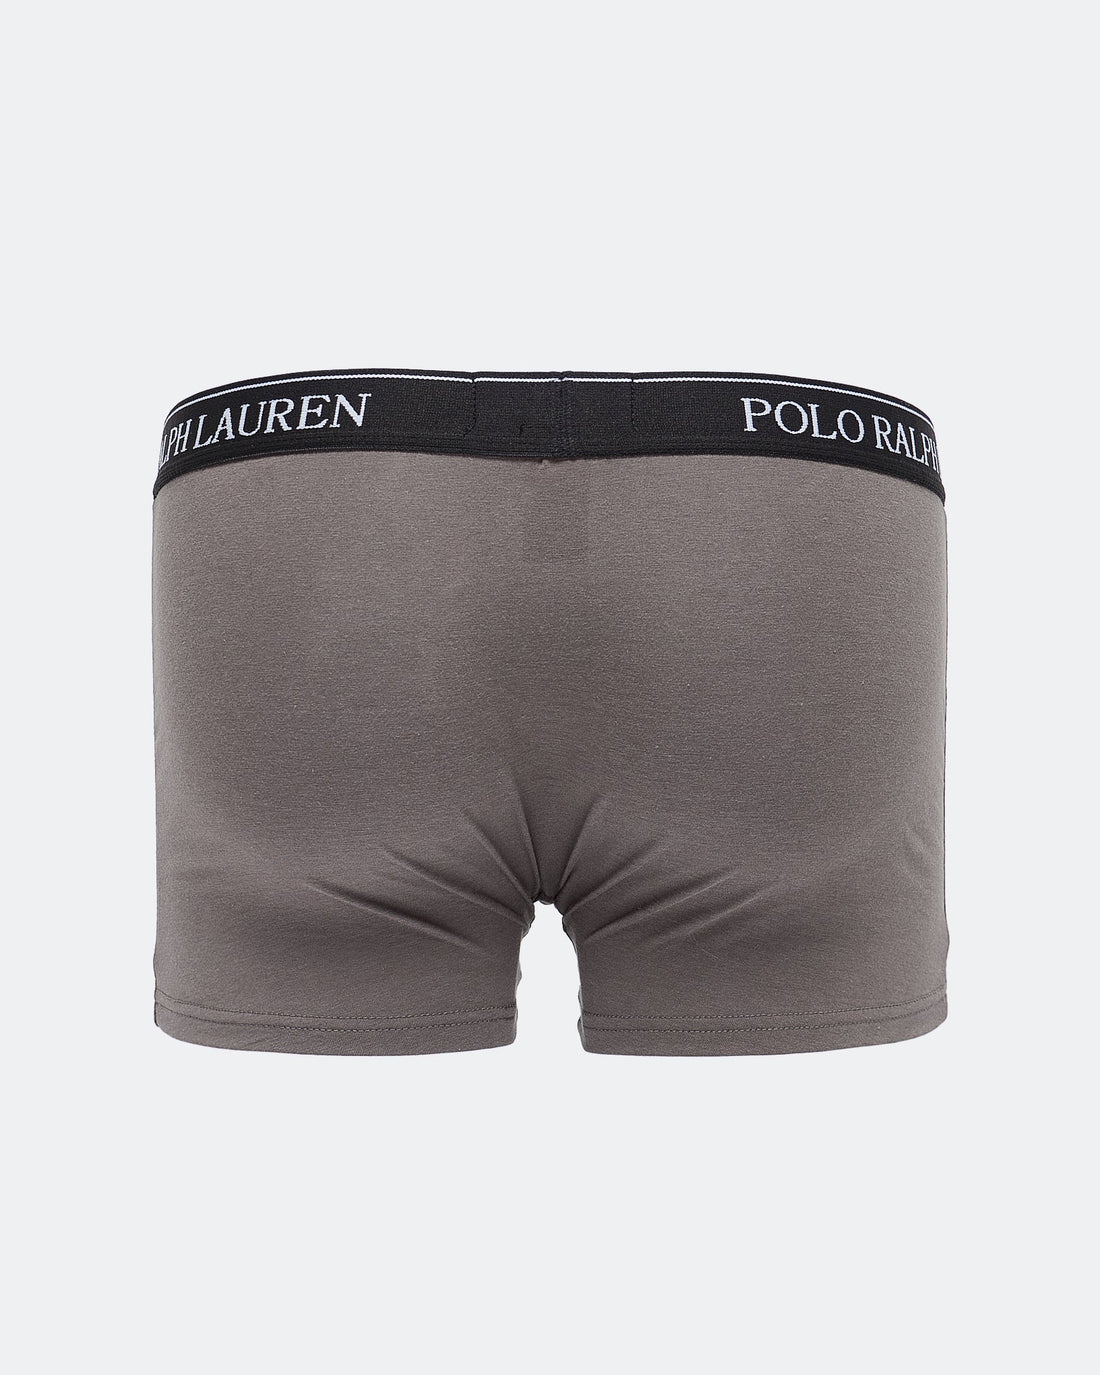 MOI OUTFIT-Polo Logo Printed Men Underwear 5.90